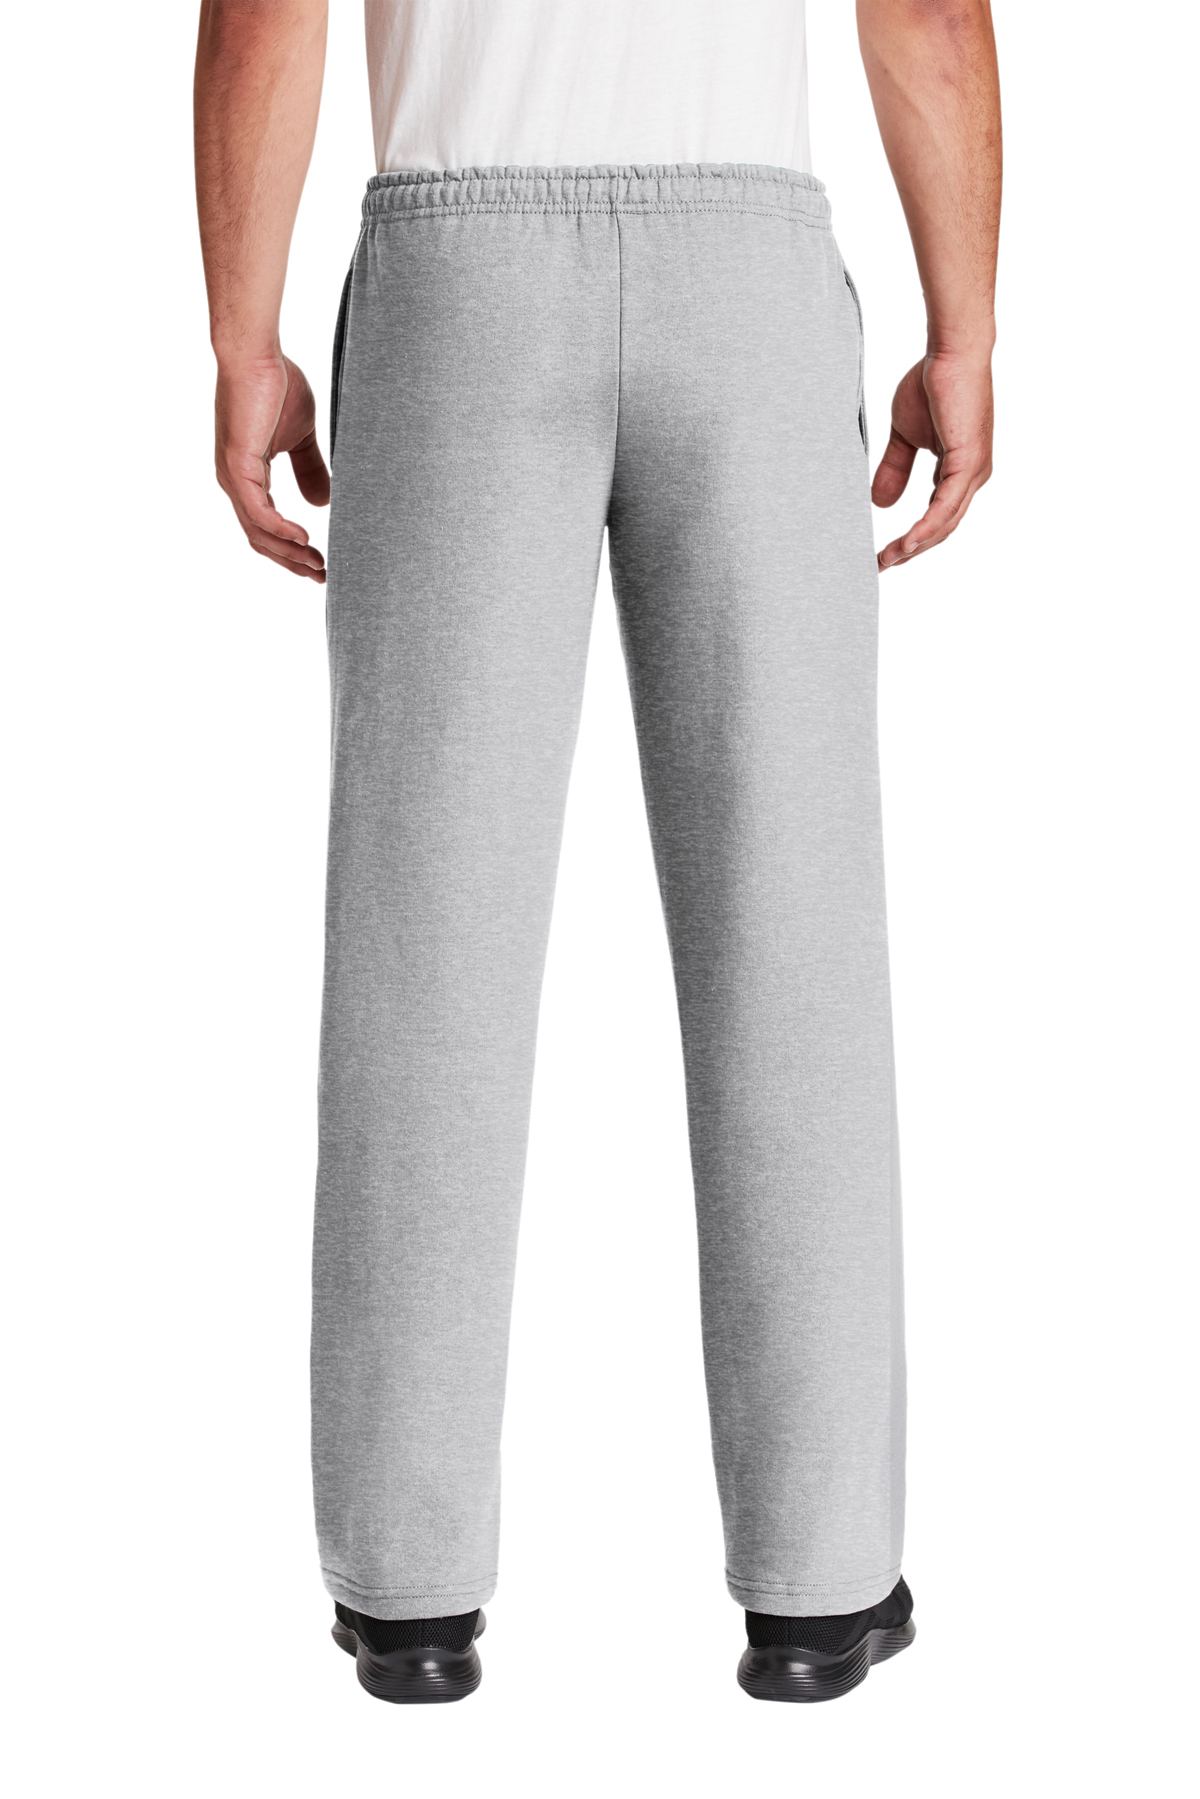 Gildan 50/50 Ultra Blend Open Bottom Sweatpants with Pockets 12300 S-2XL 